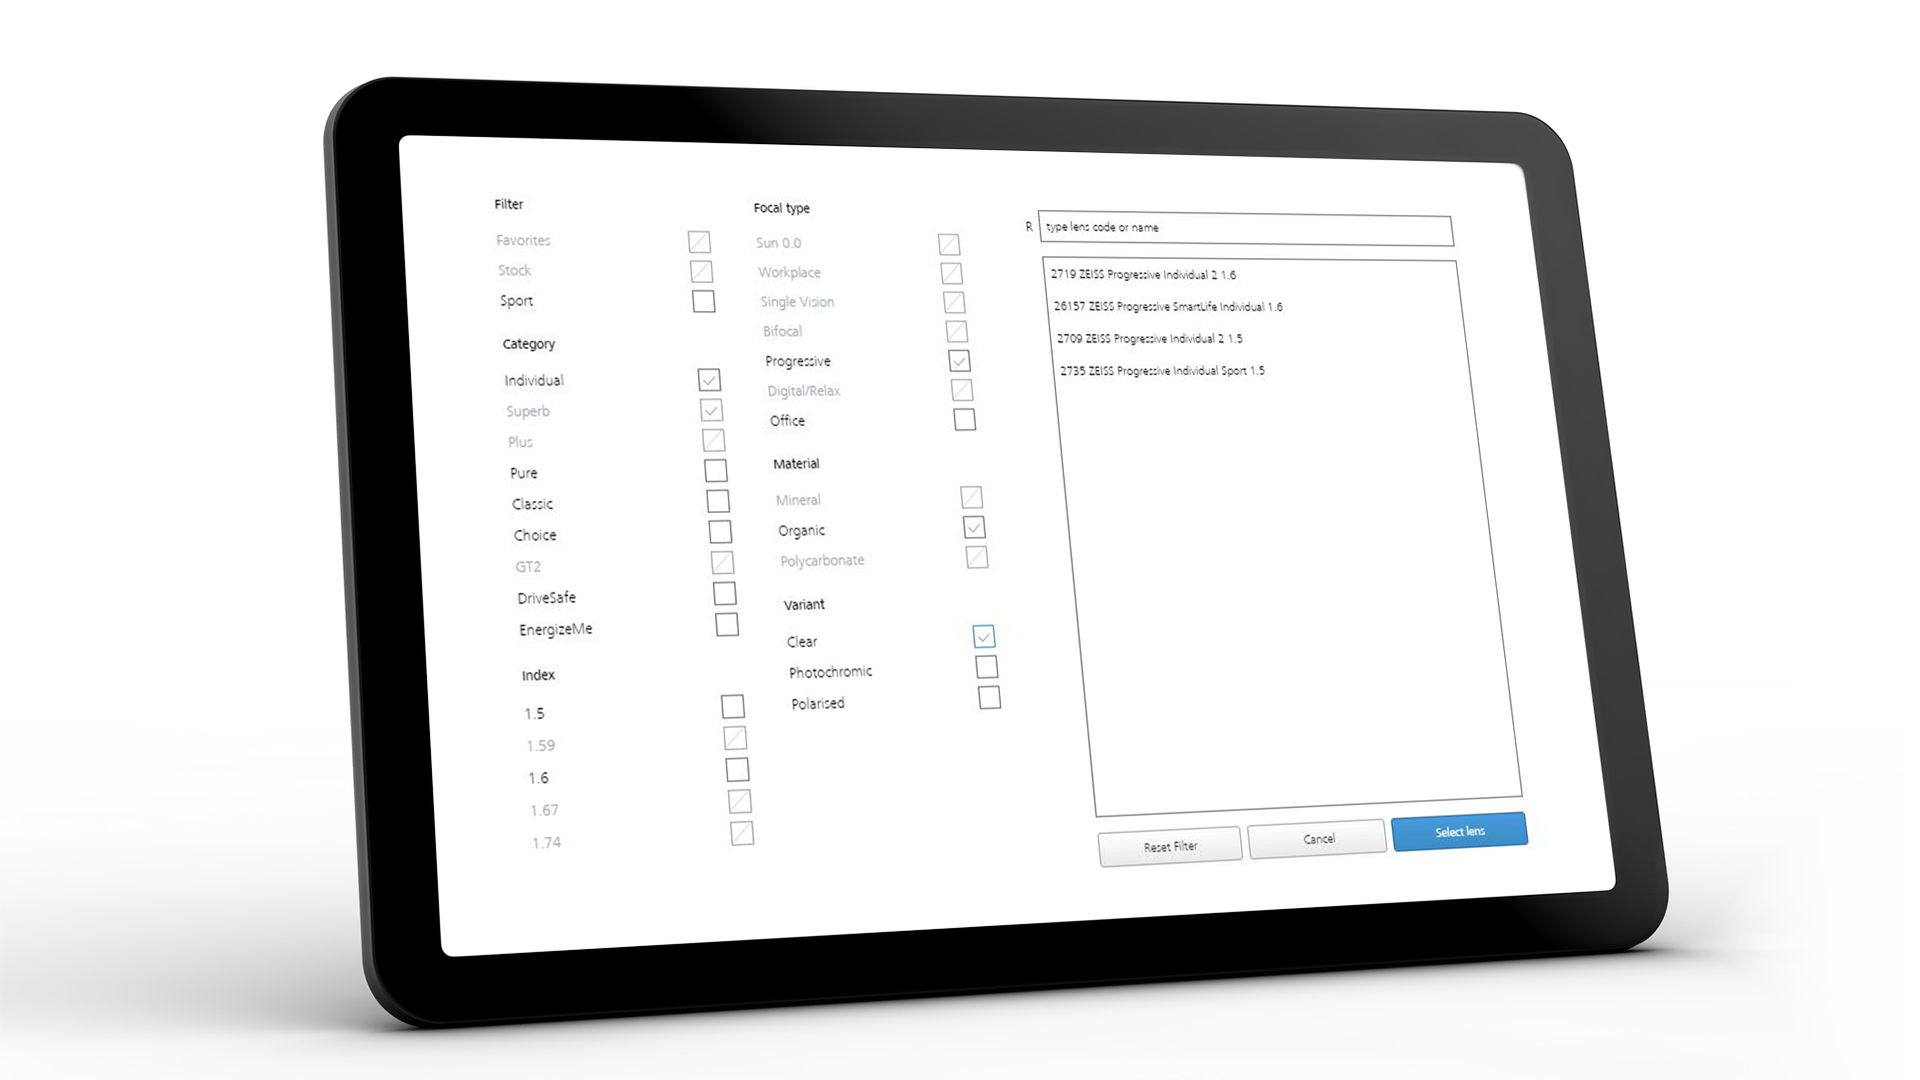 Ekran tabletu pokazujący interfejs VISUSTORE dla kilku przydatnych wskazówek 